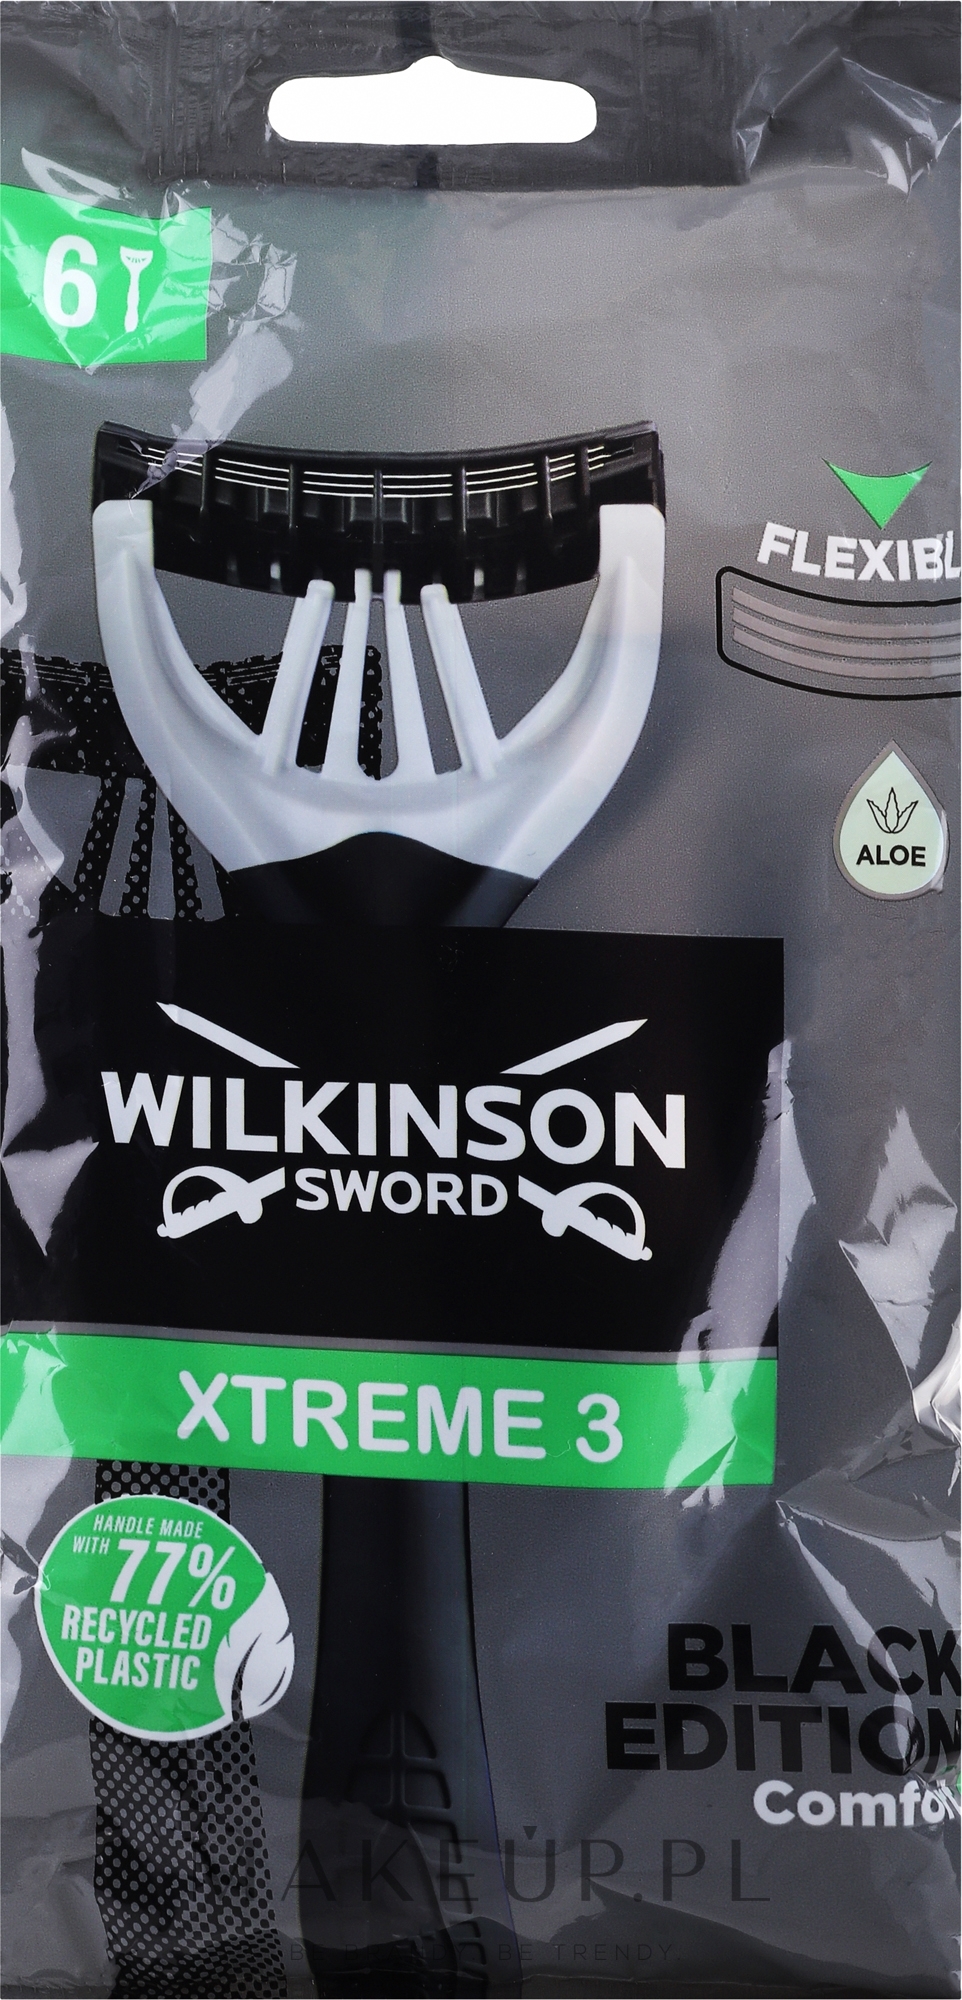 Zestaw jednorazowych maszynek do golenia, 6 szt. - Wilkinson Sword Xtreme 3 Black Edition — Zdjęcie 6 szt.